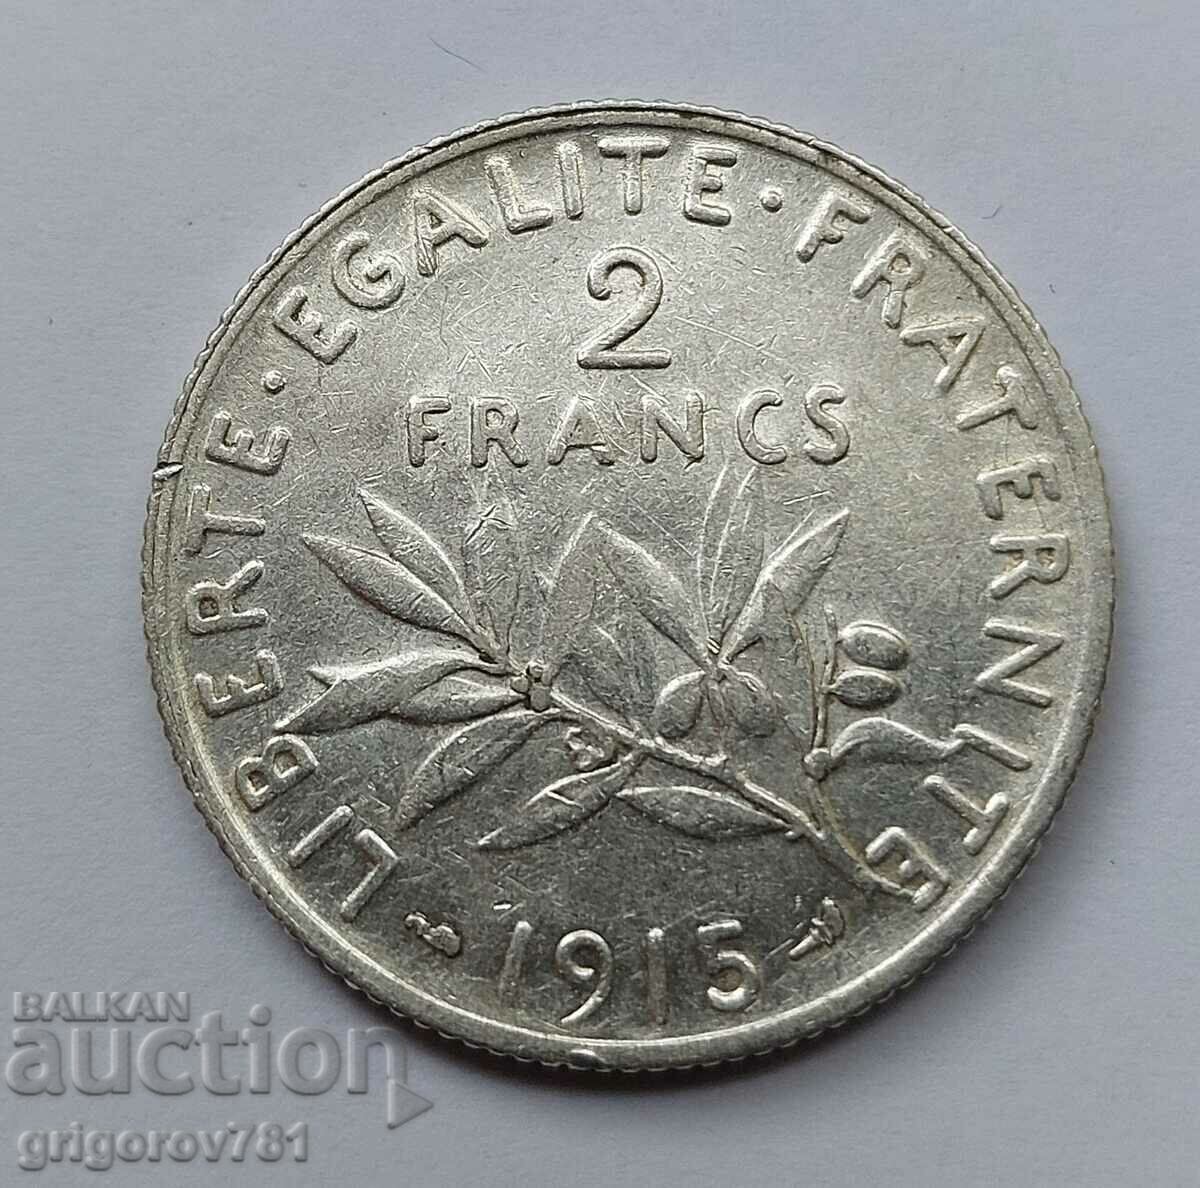 2 Franci Argint Franta 1915 - Moneda de argint #71